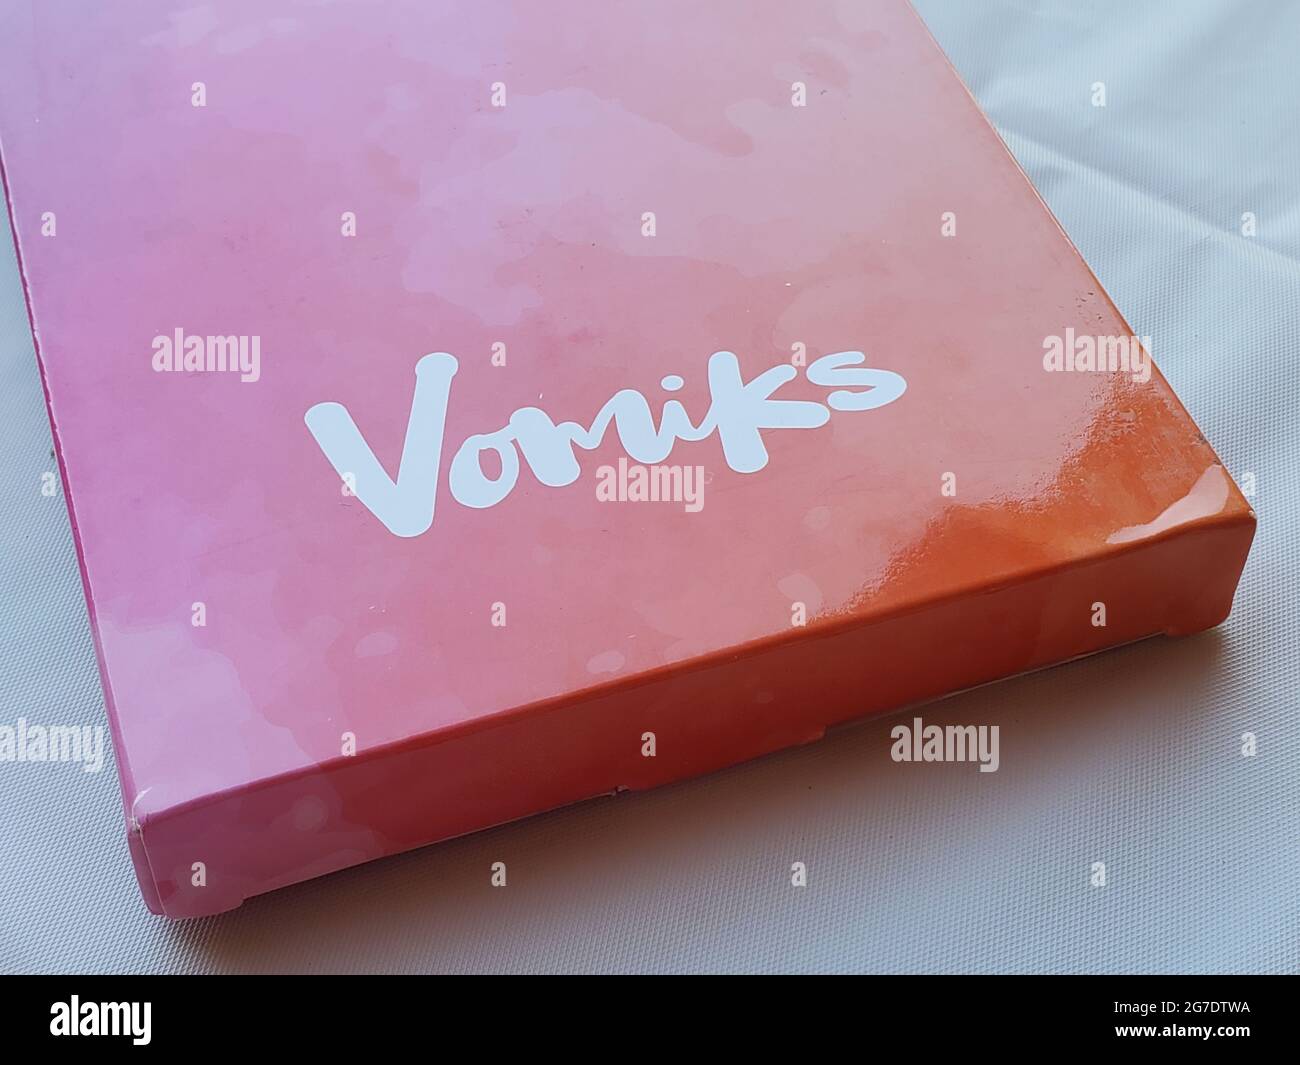 Logotipo de la empresa de suministros de arte Vomiks en la caja de Lafayette, California, 13 de mayo de 2021. () Foto de stock